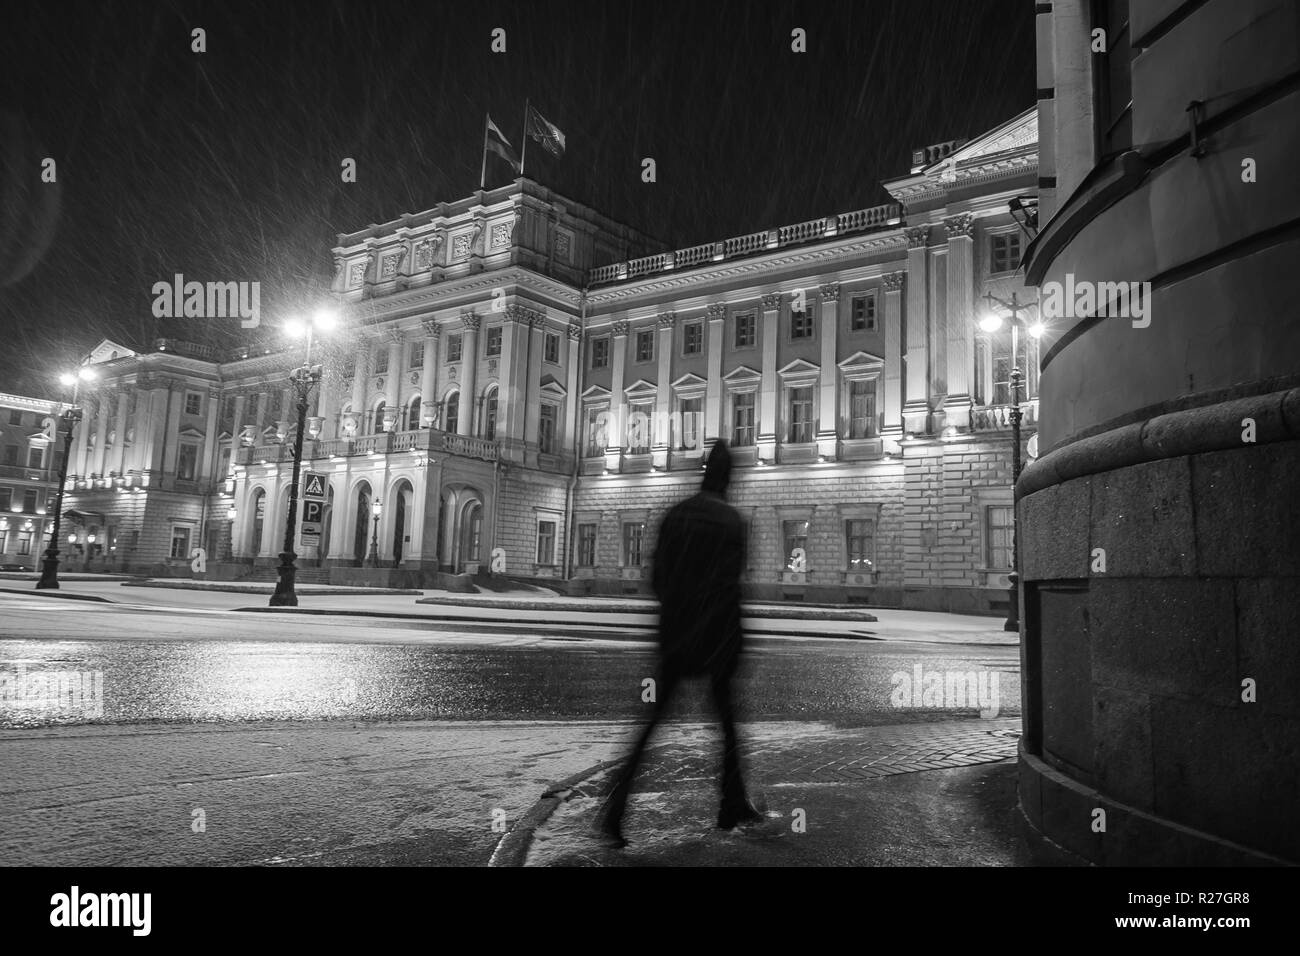 Ottobre 28, 2018 - San Pietroburgo, Russia. Un'assemblea legislativa edificio (palazzo Mariinsky), in bianco e nero vista notturna in inverno Foto Stock